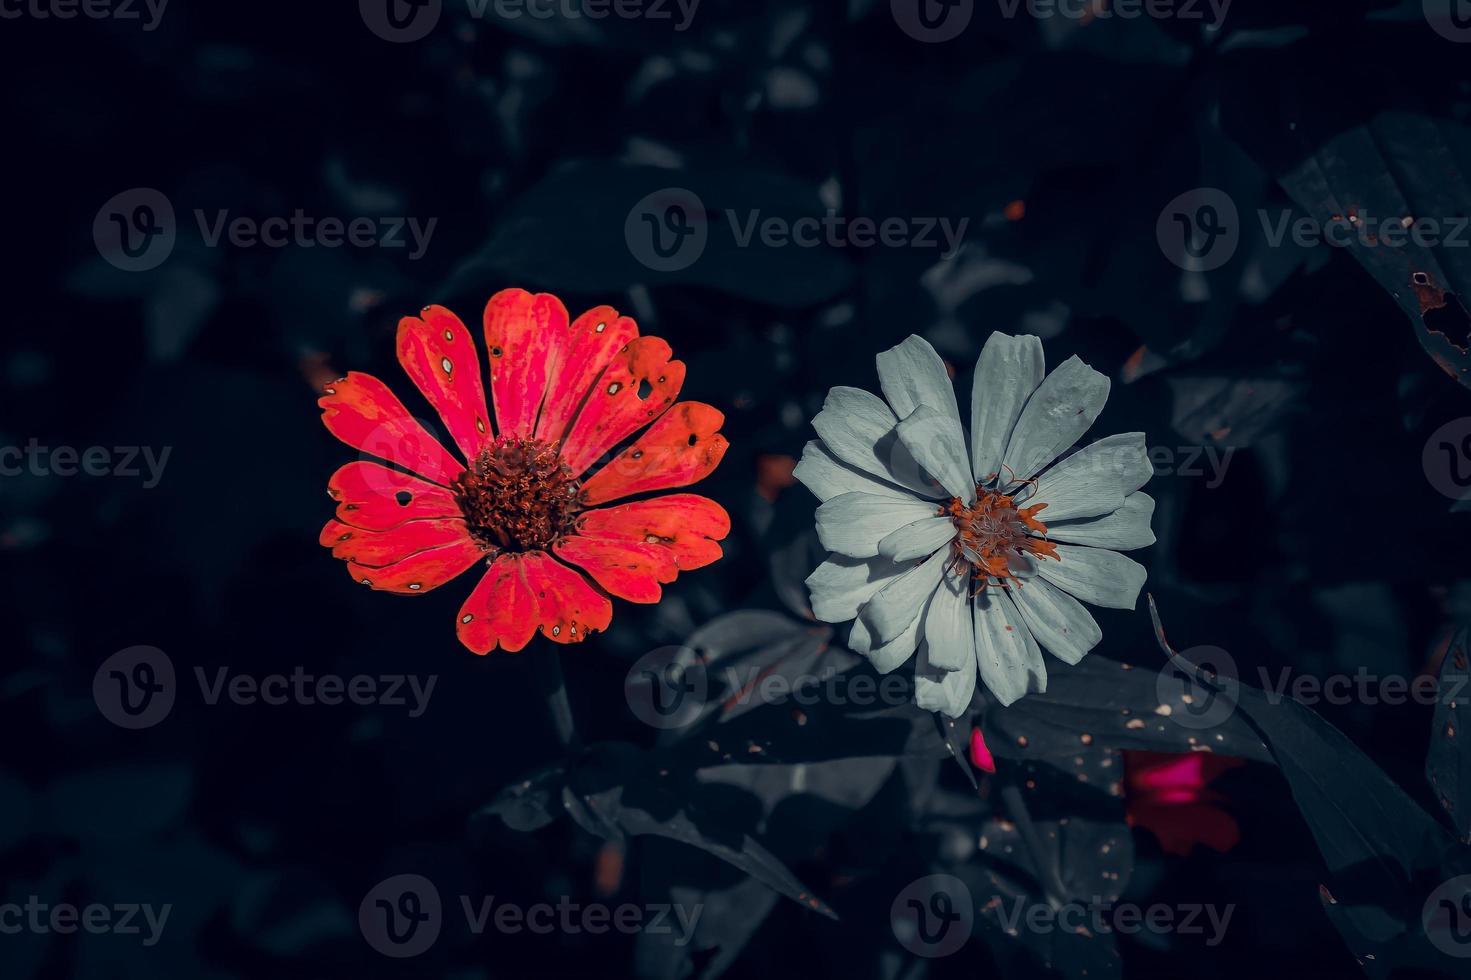 Foto von 2 Zinnia-Blumen, eine rot und die andere weiß mit einem eleganten dunklen Effekt